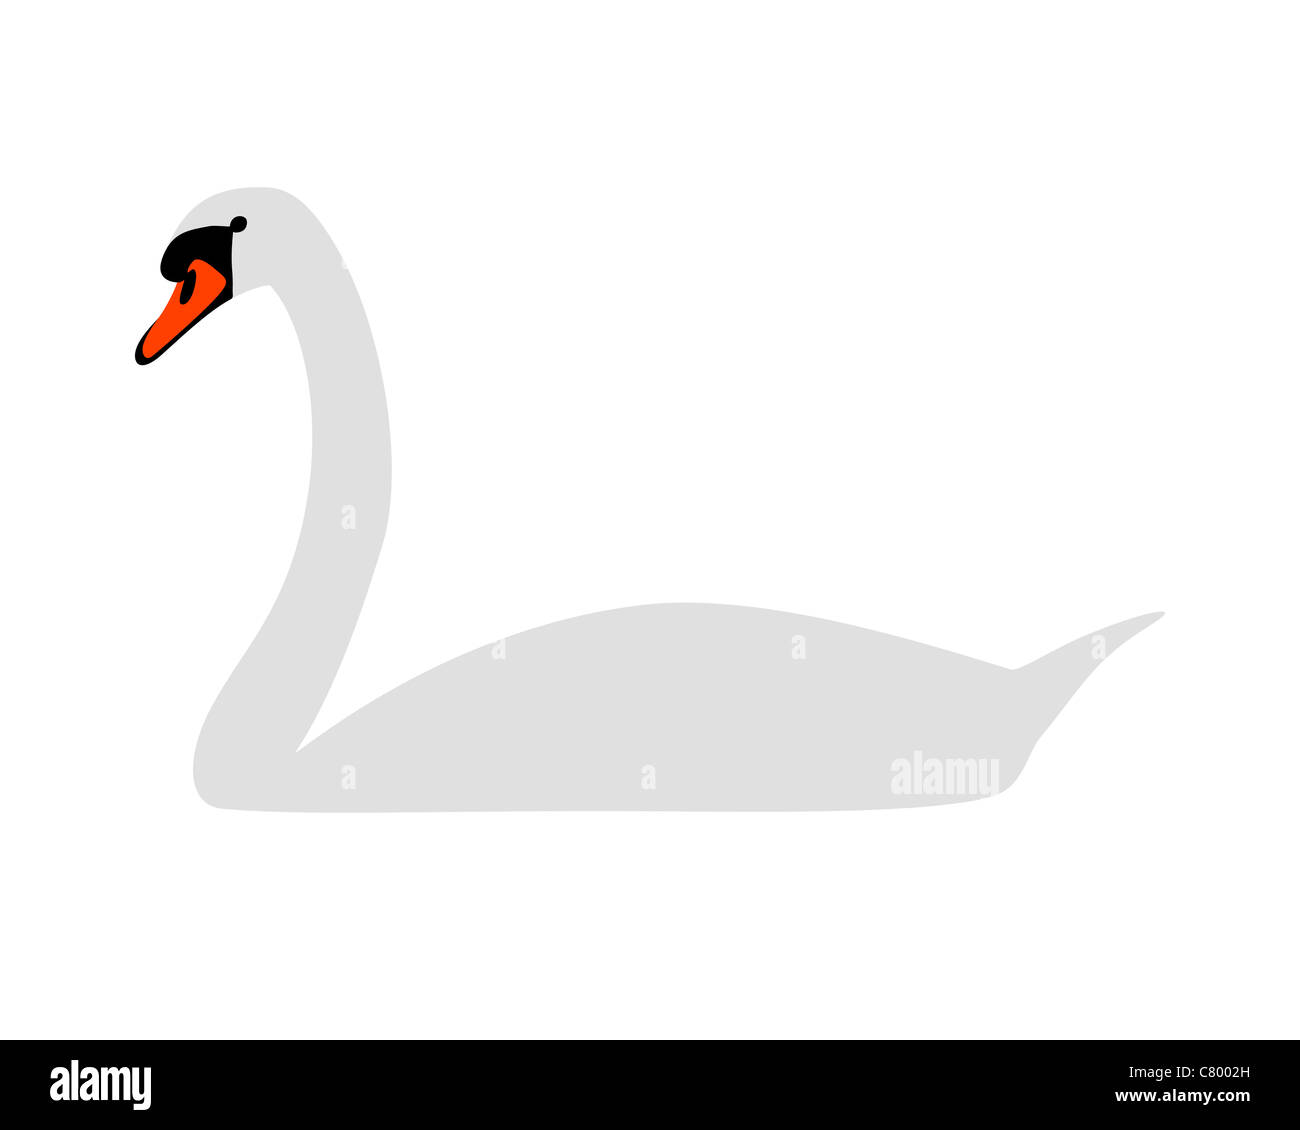 White swan Stock Photo